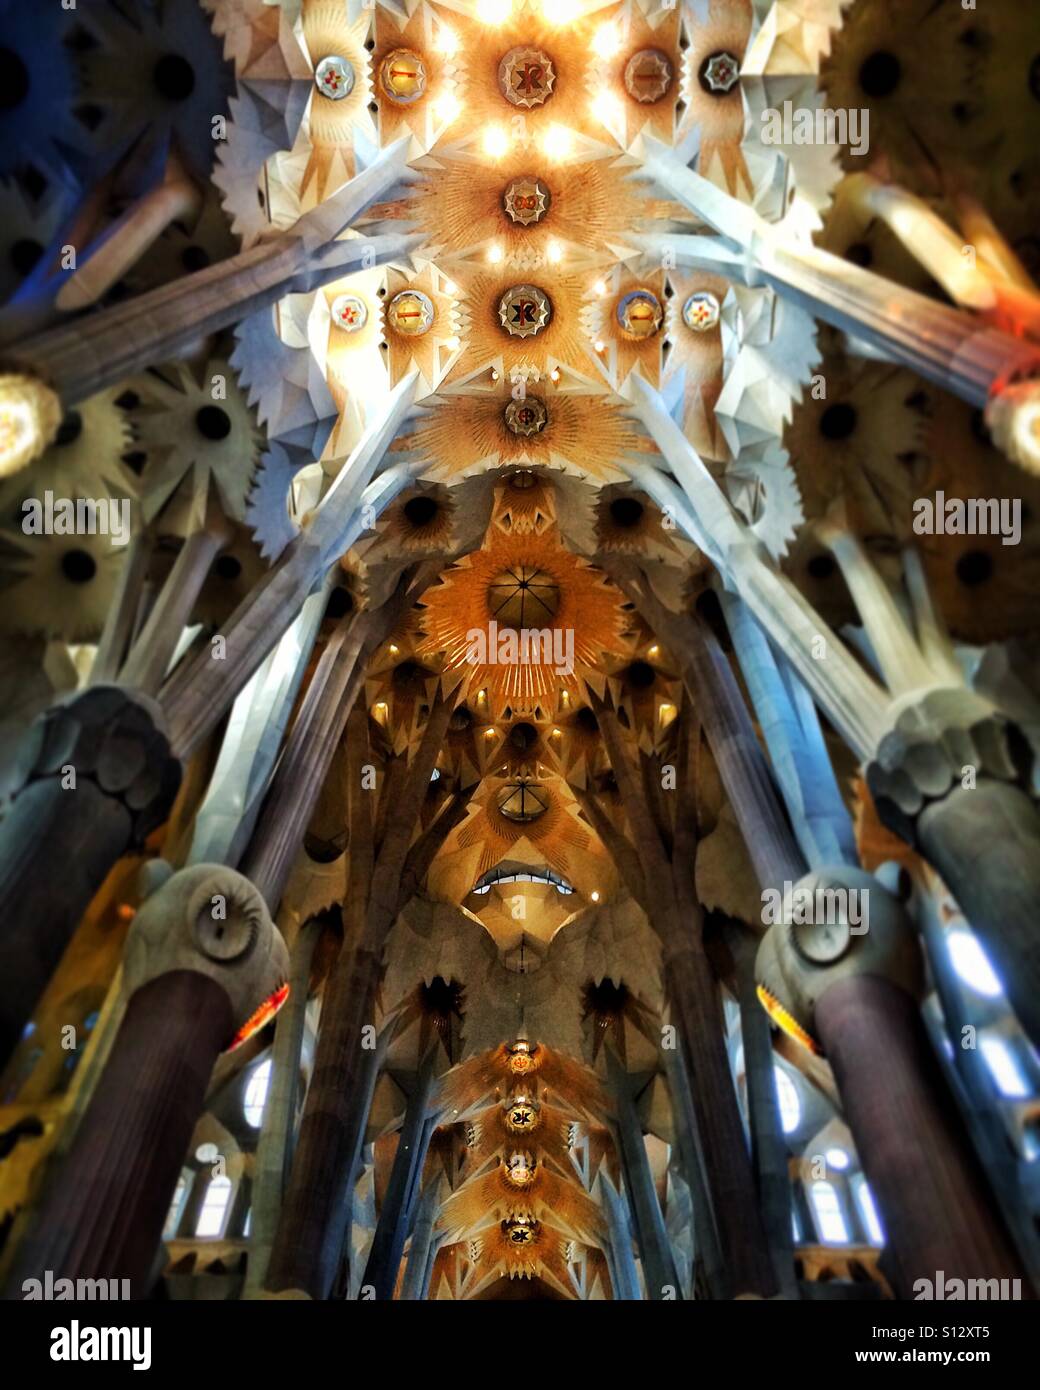 The ceiling of the la sagrada familia in Barcelona Stock Photo